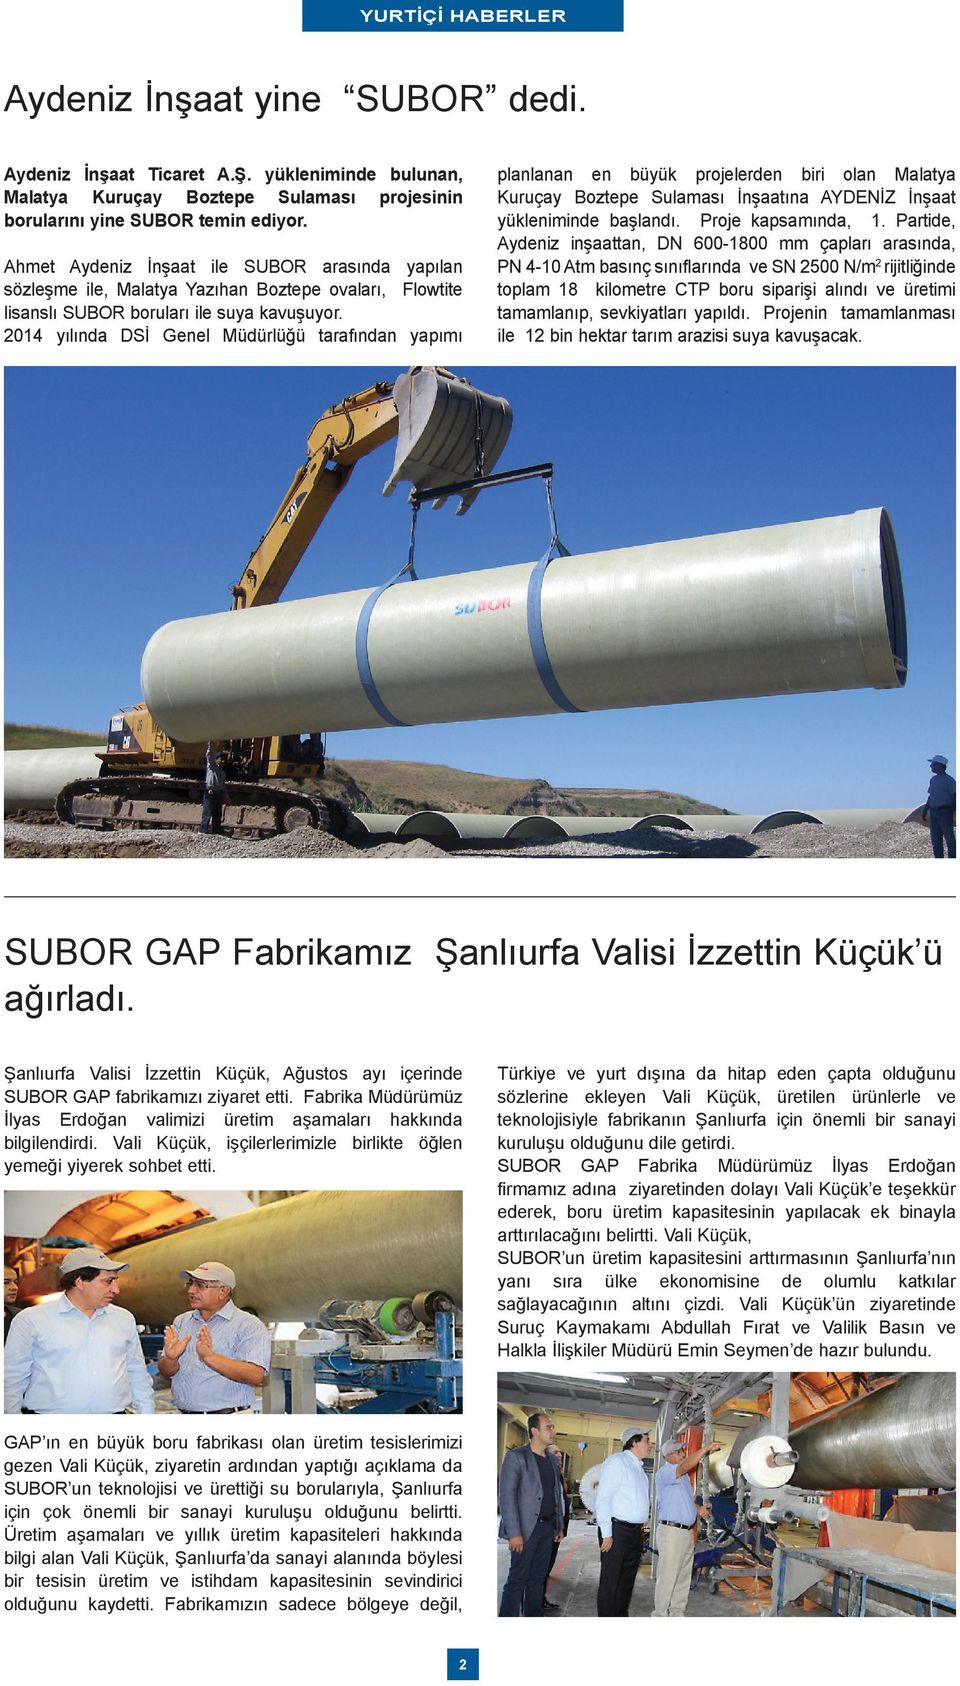 2014 yılında DSİ Genel Müdürlüğü tarafından yapımı planlanan en büyük projelerden biri olan Malatya Kuruçay Boztepe Sulaması İnşaatına AYDENİZ İnşaat yükleniminde başlandı. Proje kapsamında, 1.